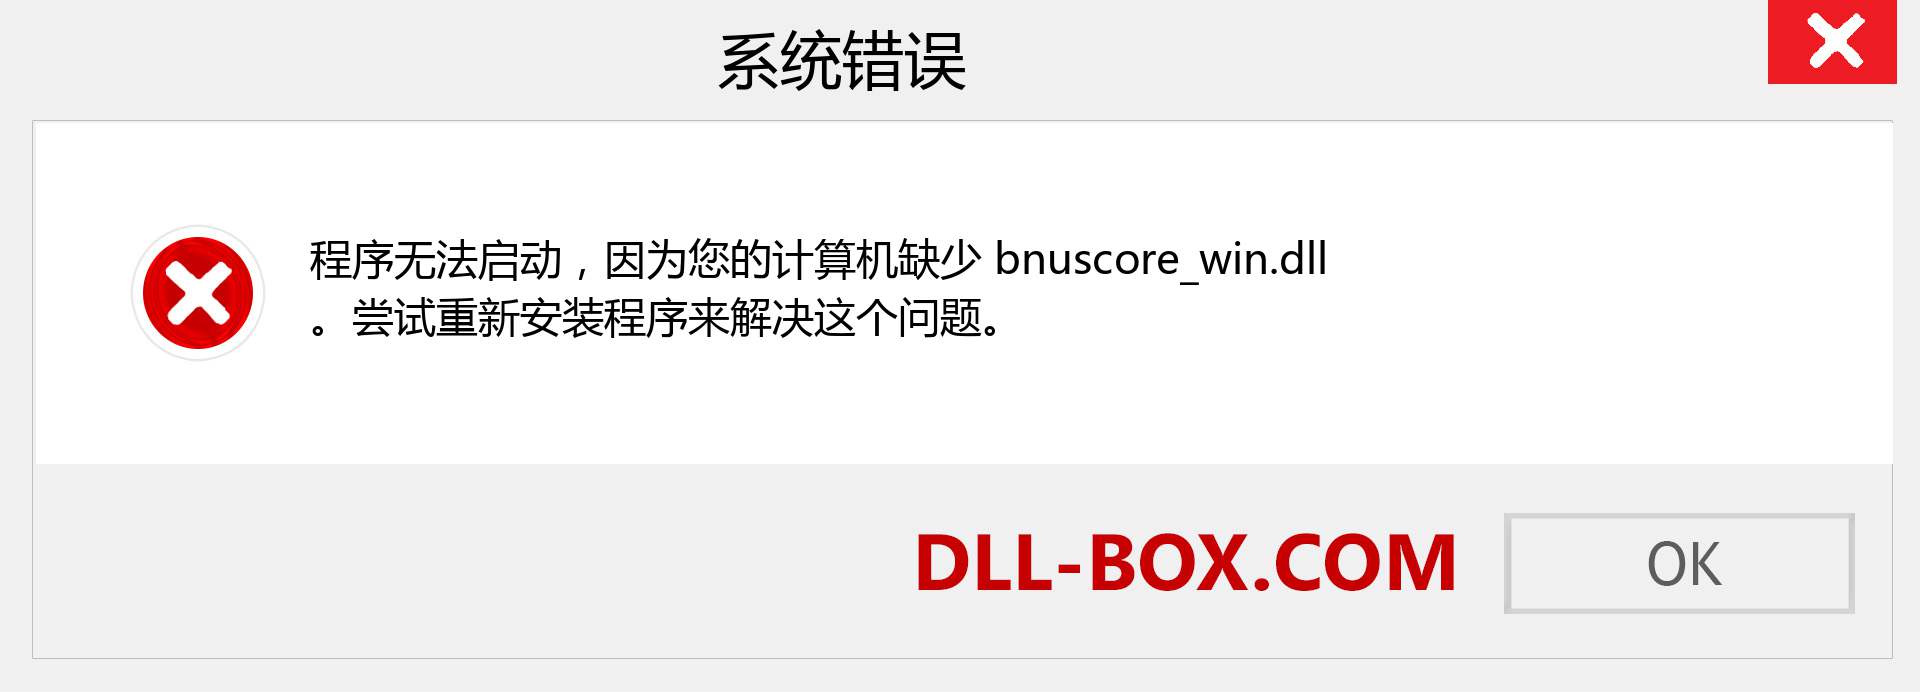 bnuscore_win.dll 文件丢失？。 适用于 Windows 7、8、10 的下载 - 修复 Windows、照片、图像上的 bnuscore_win dll 丢失错误